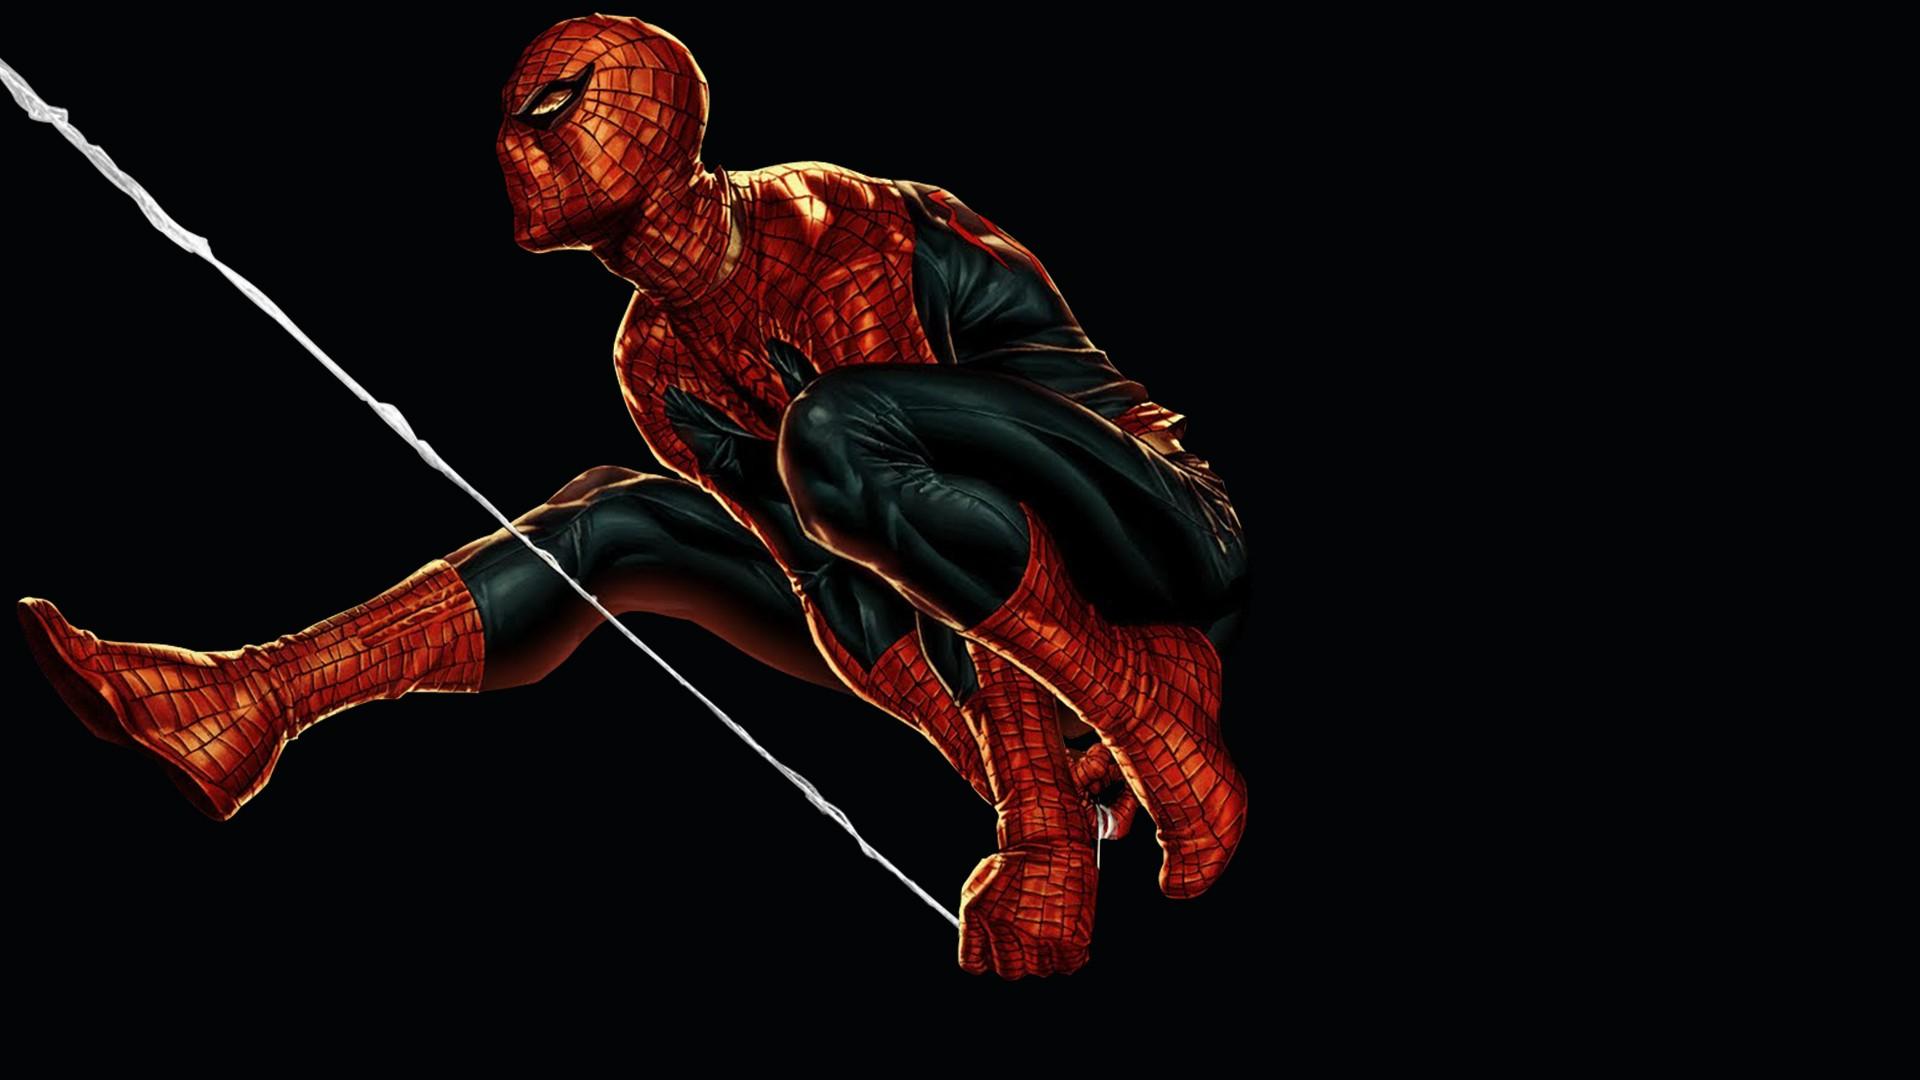 Spider-Man Marvel Black Drawing Spiderman Spider over black background  Wallpapers HD / Desktop and Mobile Backgrounds